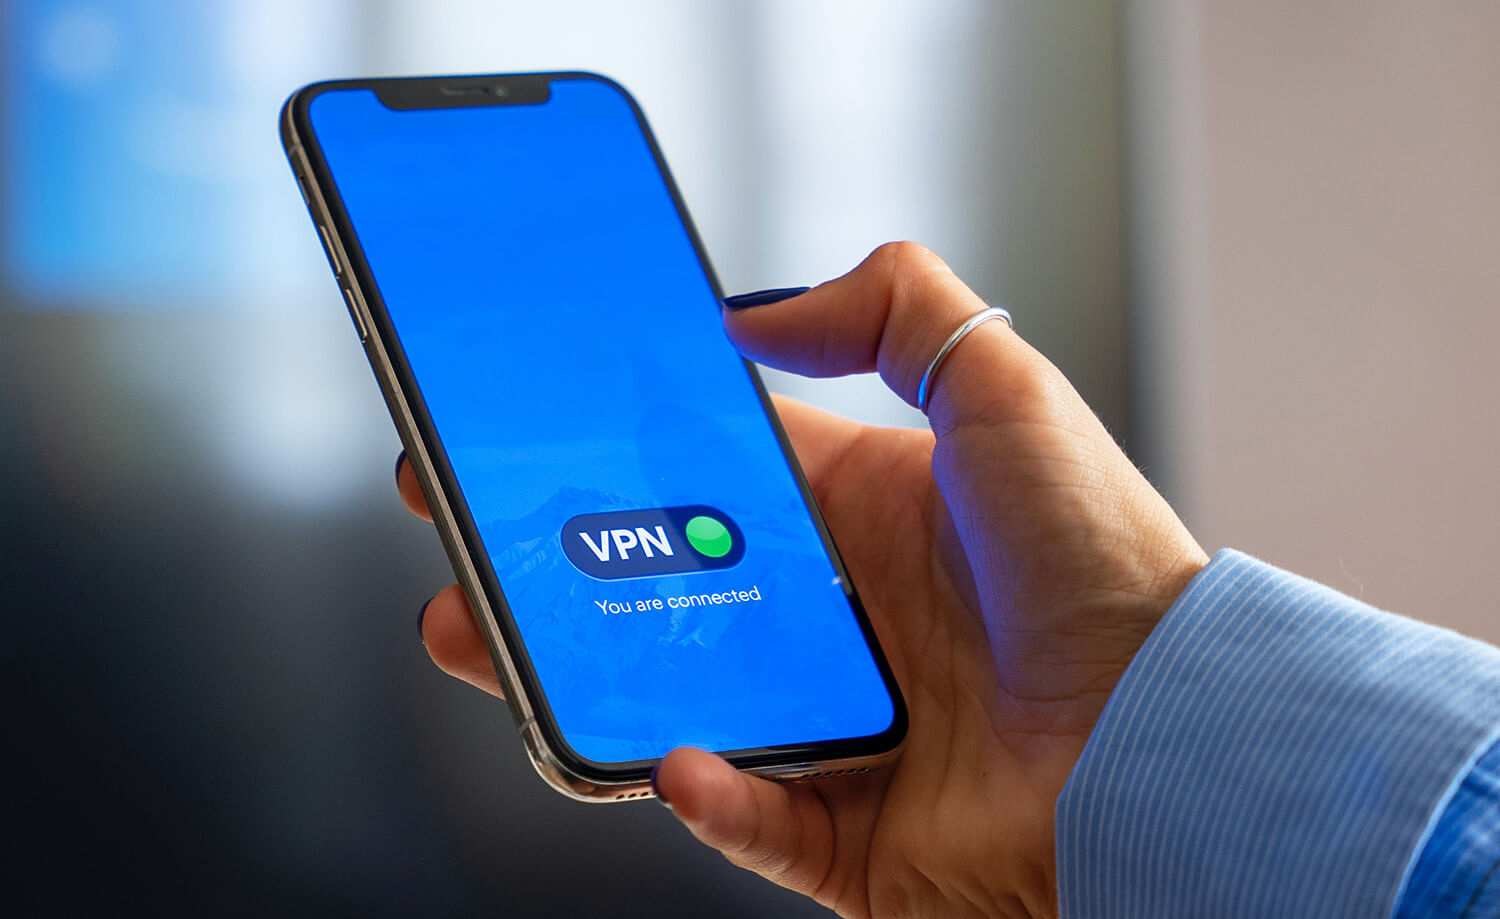 Melhores VPNs grátis e pagas para Android (rápidas e seguras)